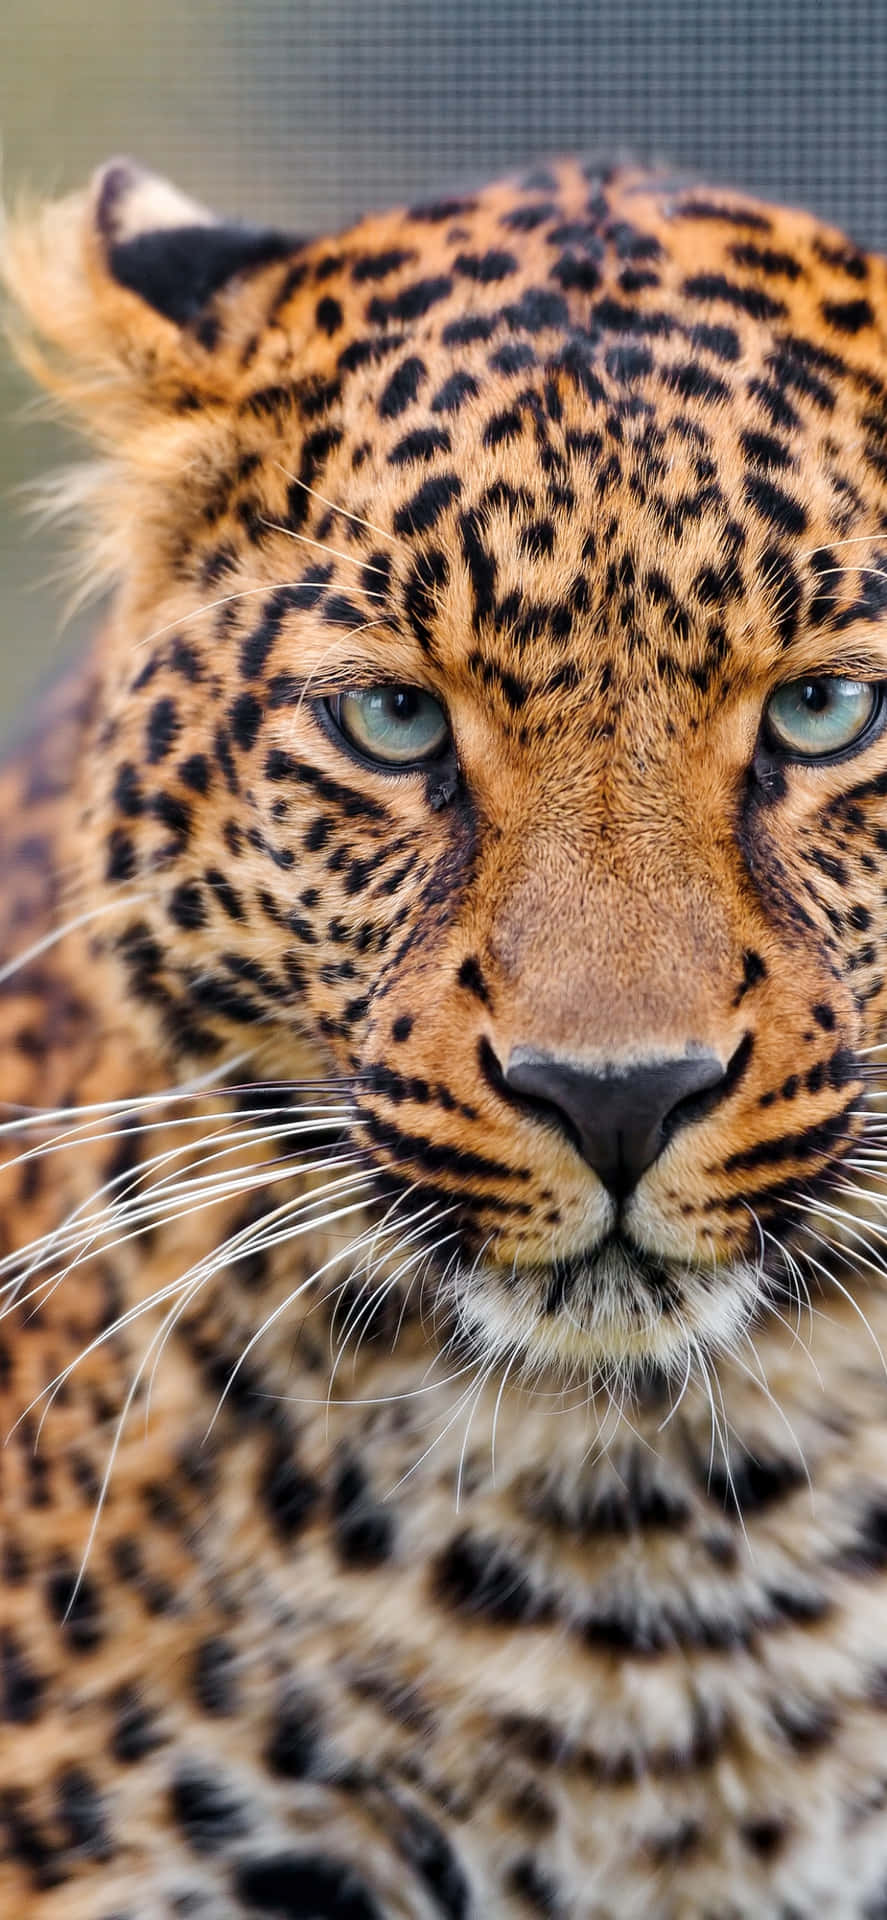 Billedeen Smuk Leopard I Naturen.